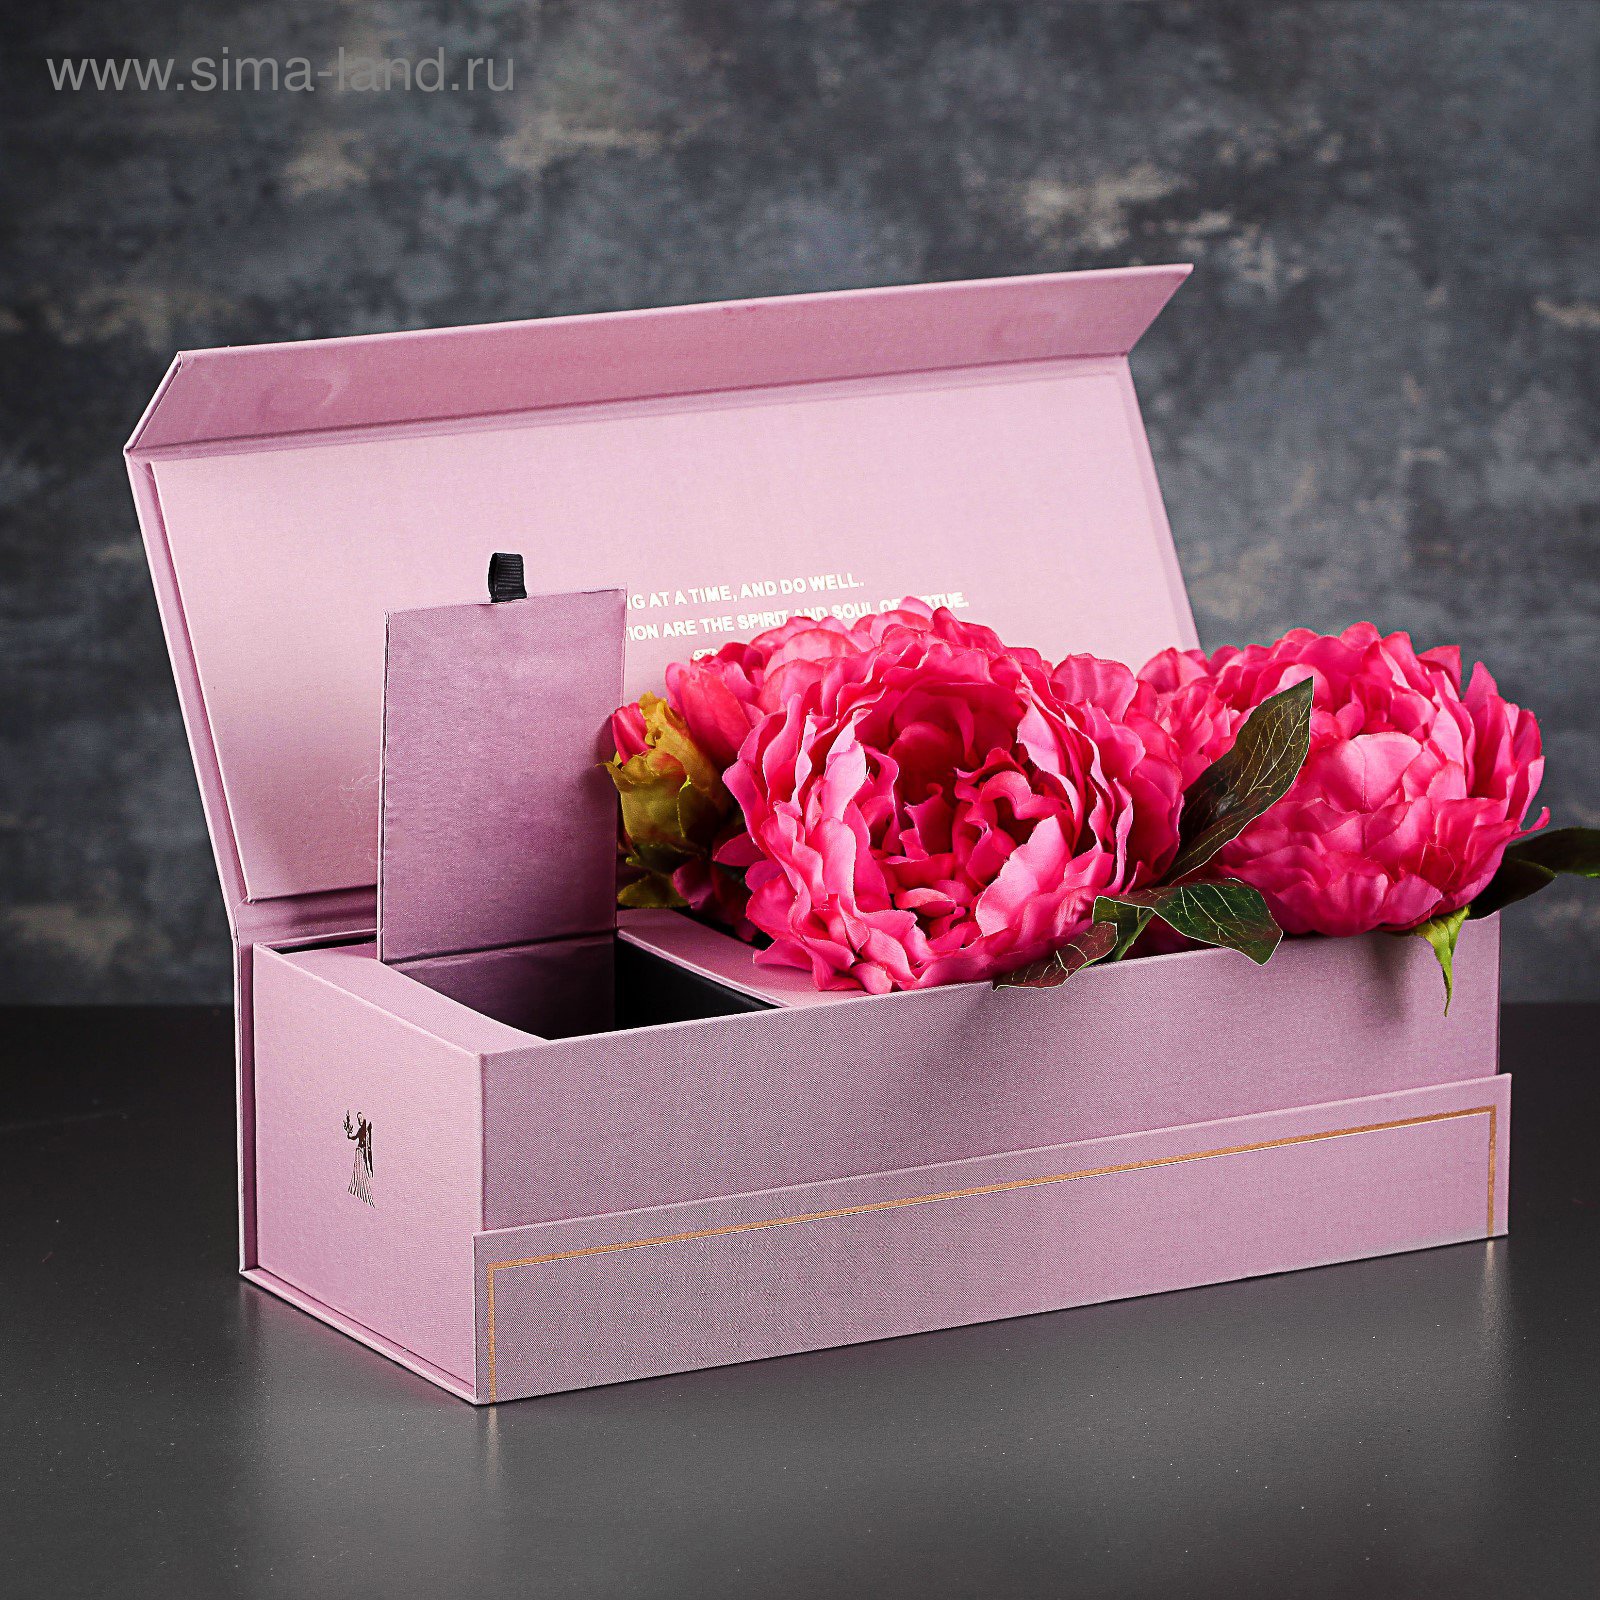 Купить красивые коробку. Красивая коробка. Красивые коробочки. Подарочная упаковка для цветов. Красивая подарочная коробка.